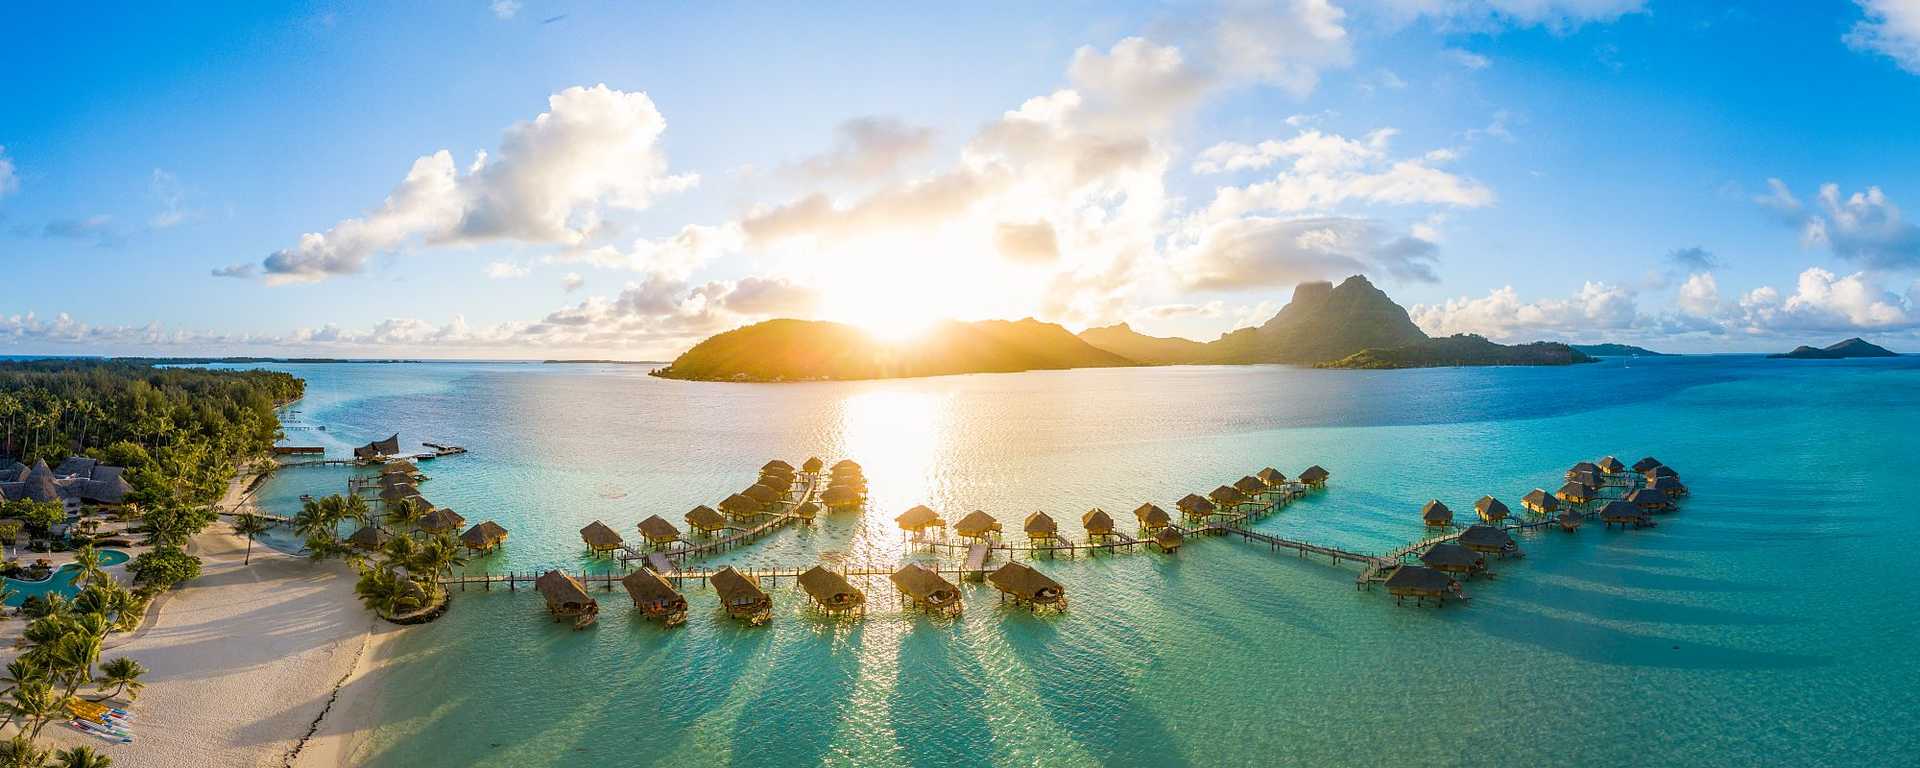 Overwater bungalows in Bora Bora, French Polynesia